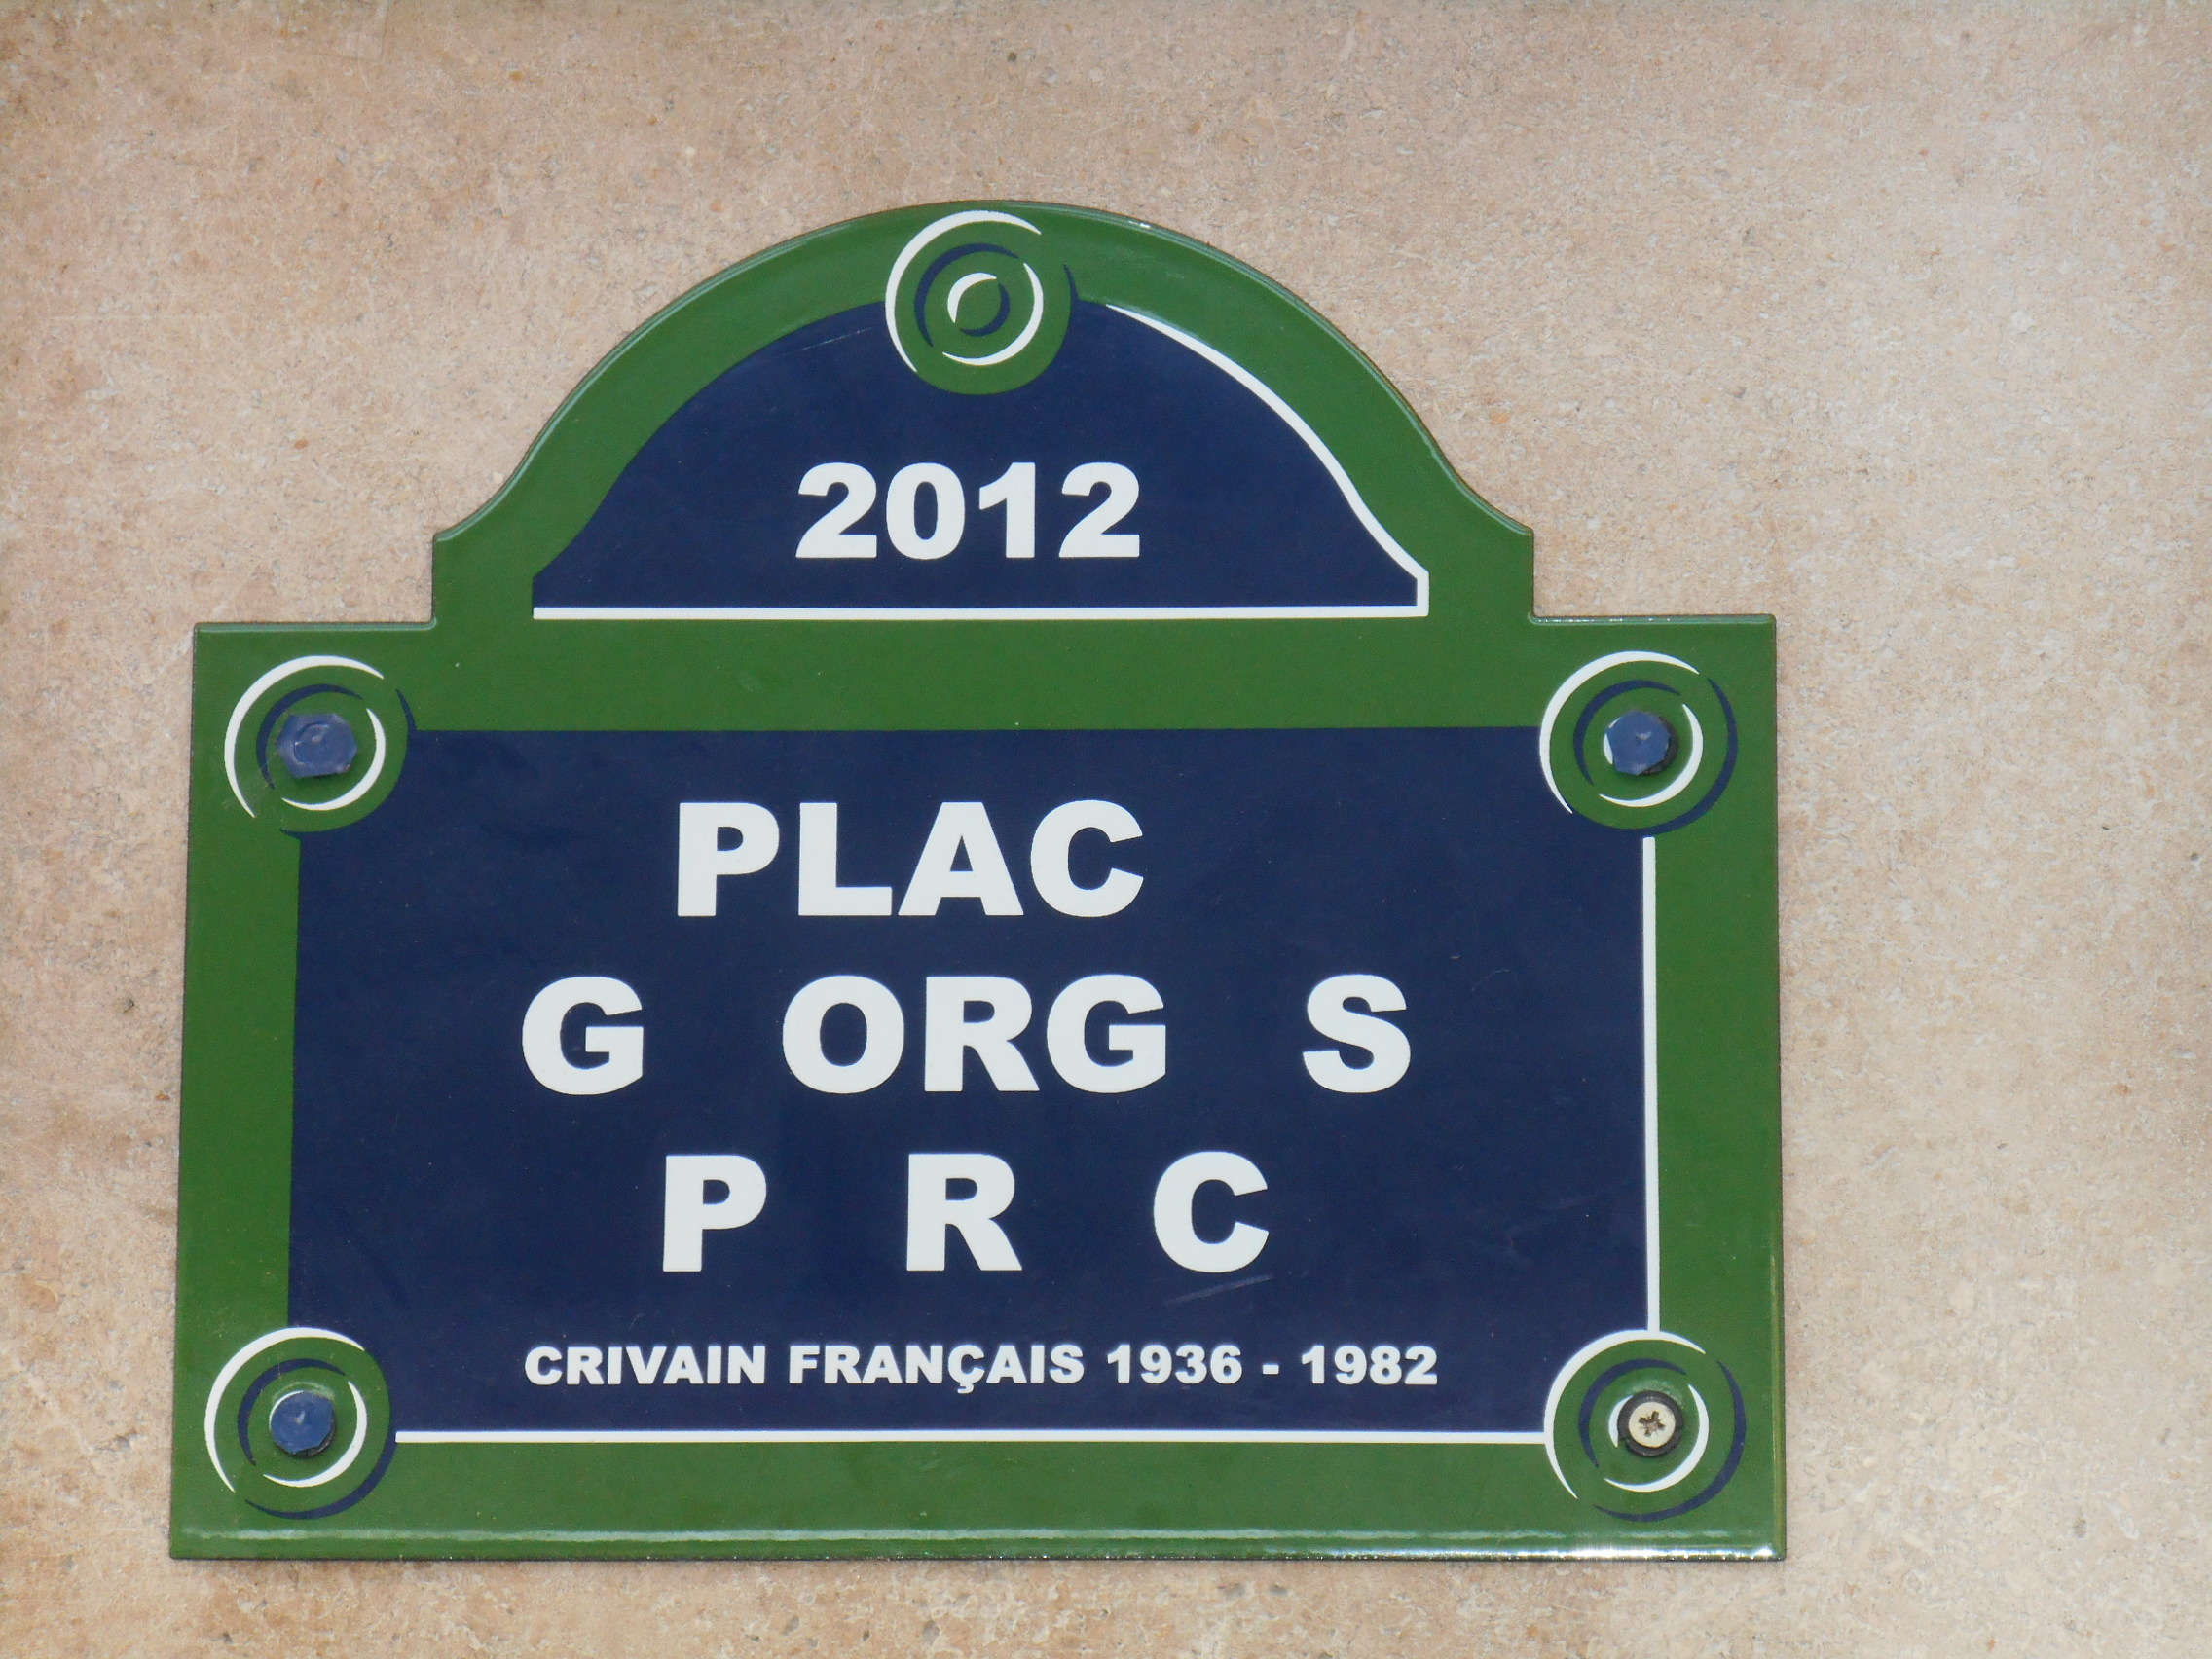 Plaque Perec GameLab Lausanne